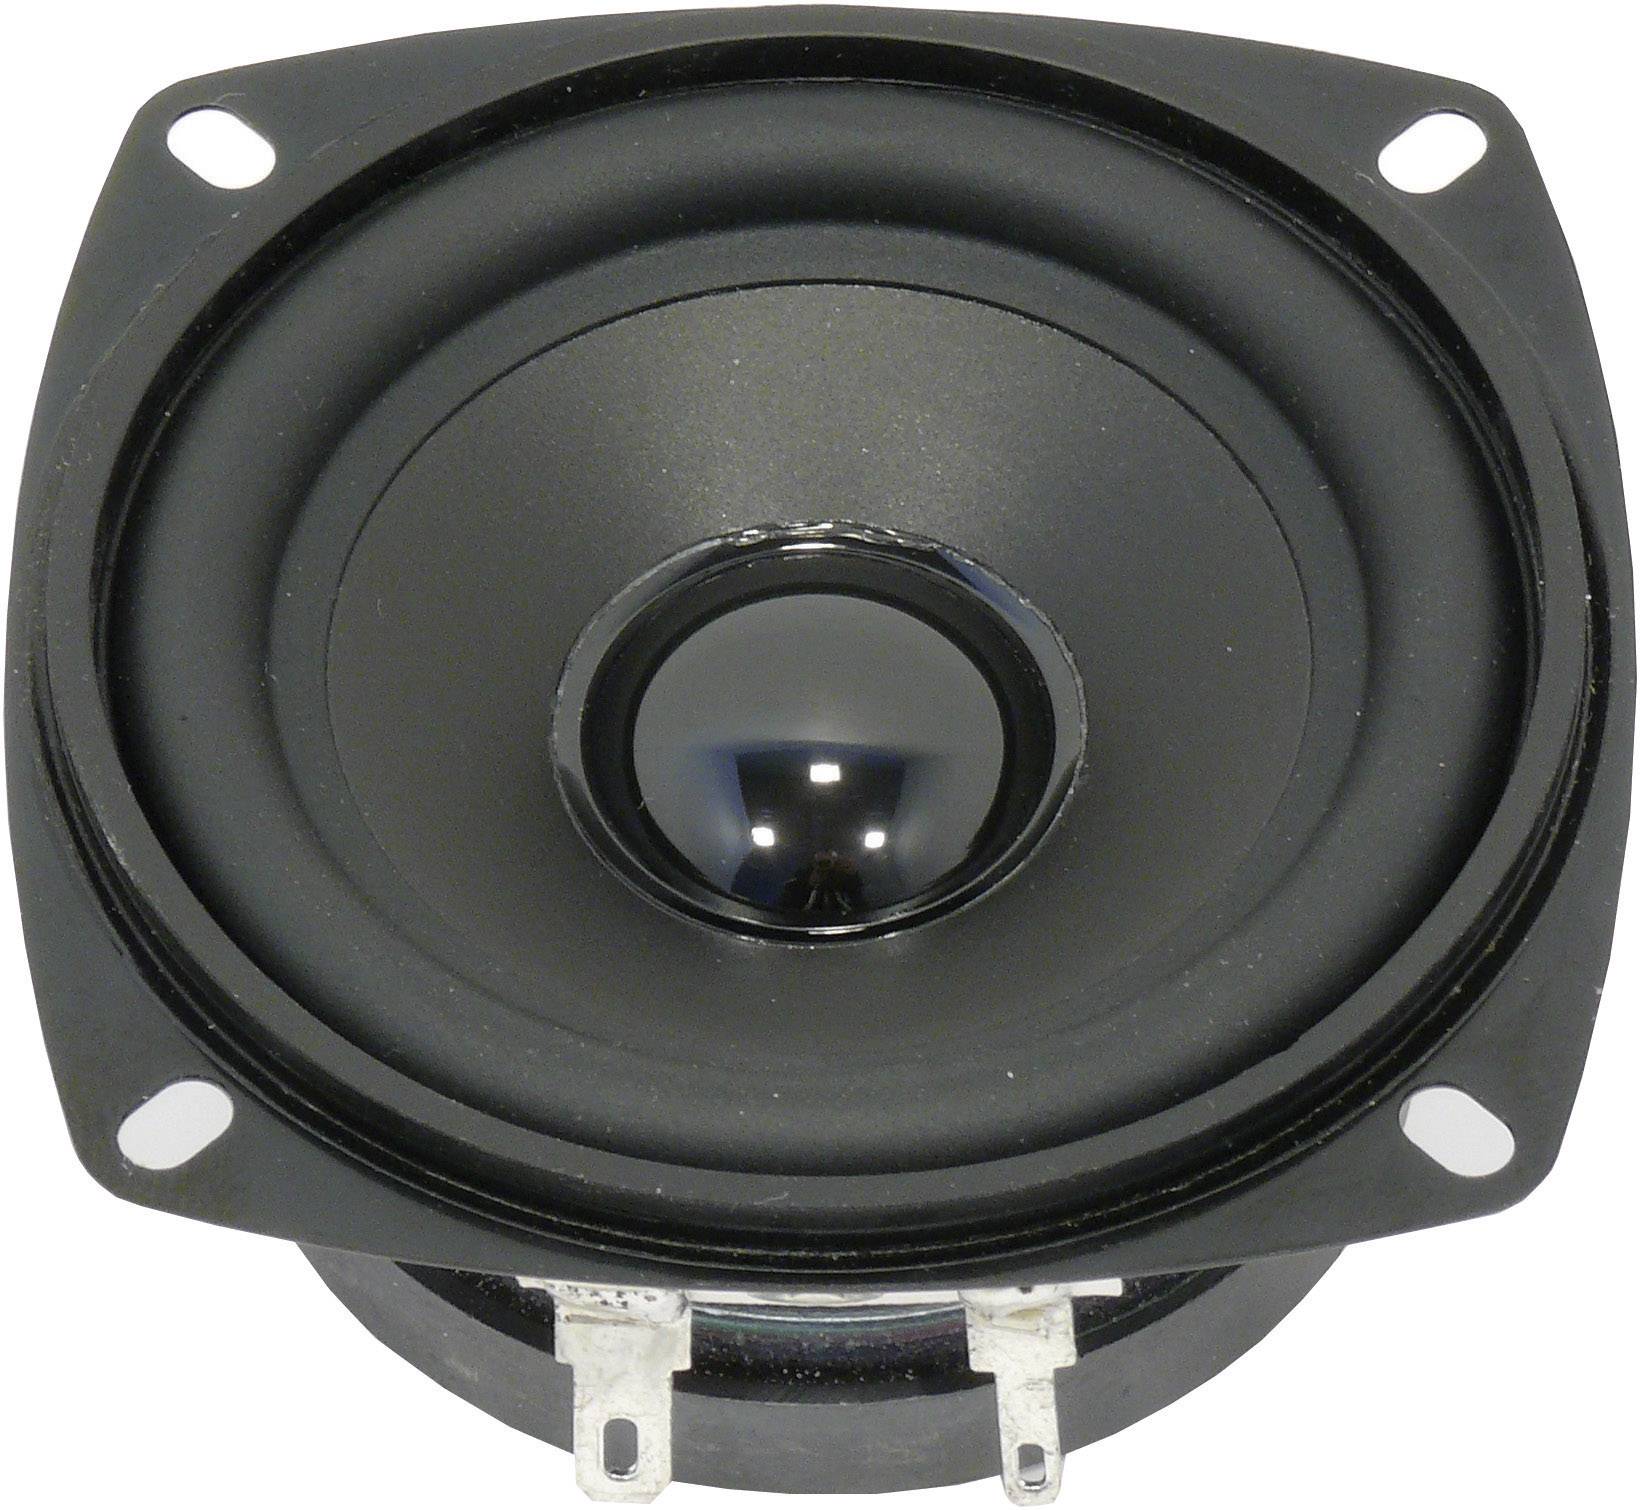 Hechting Vaak gesproken Oom of meneer Visaton FR 8 JS 3.3 inch 8 cm Wideband speaker 10 W 8 Ω | Conrad.com